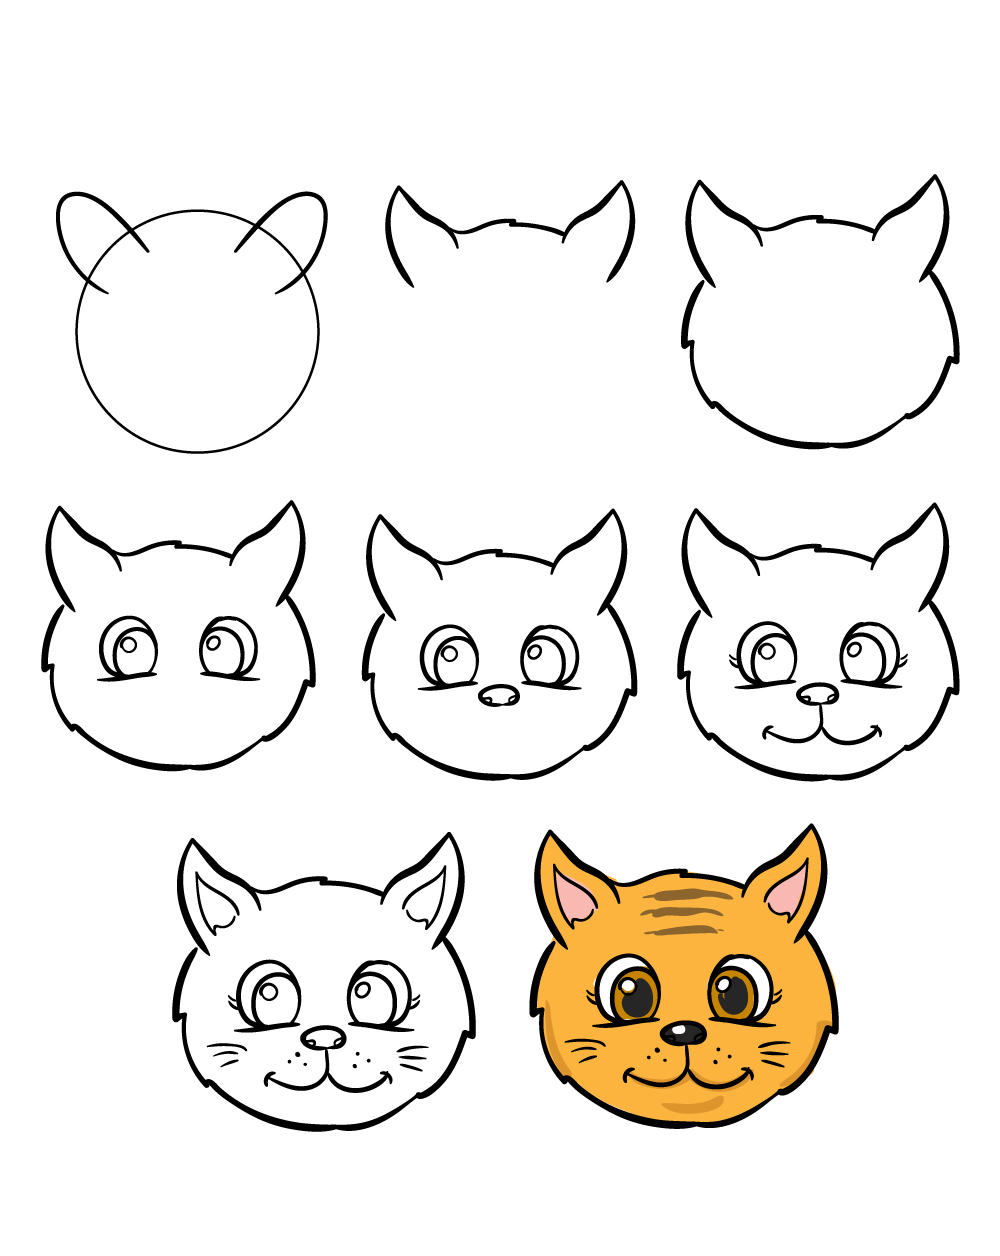 Tham khảo cách vẽ con mèo theo 10 bước cực đơn giản